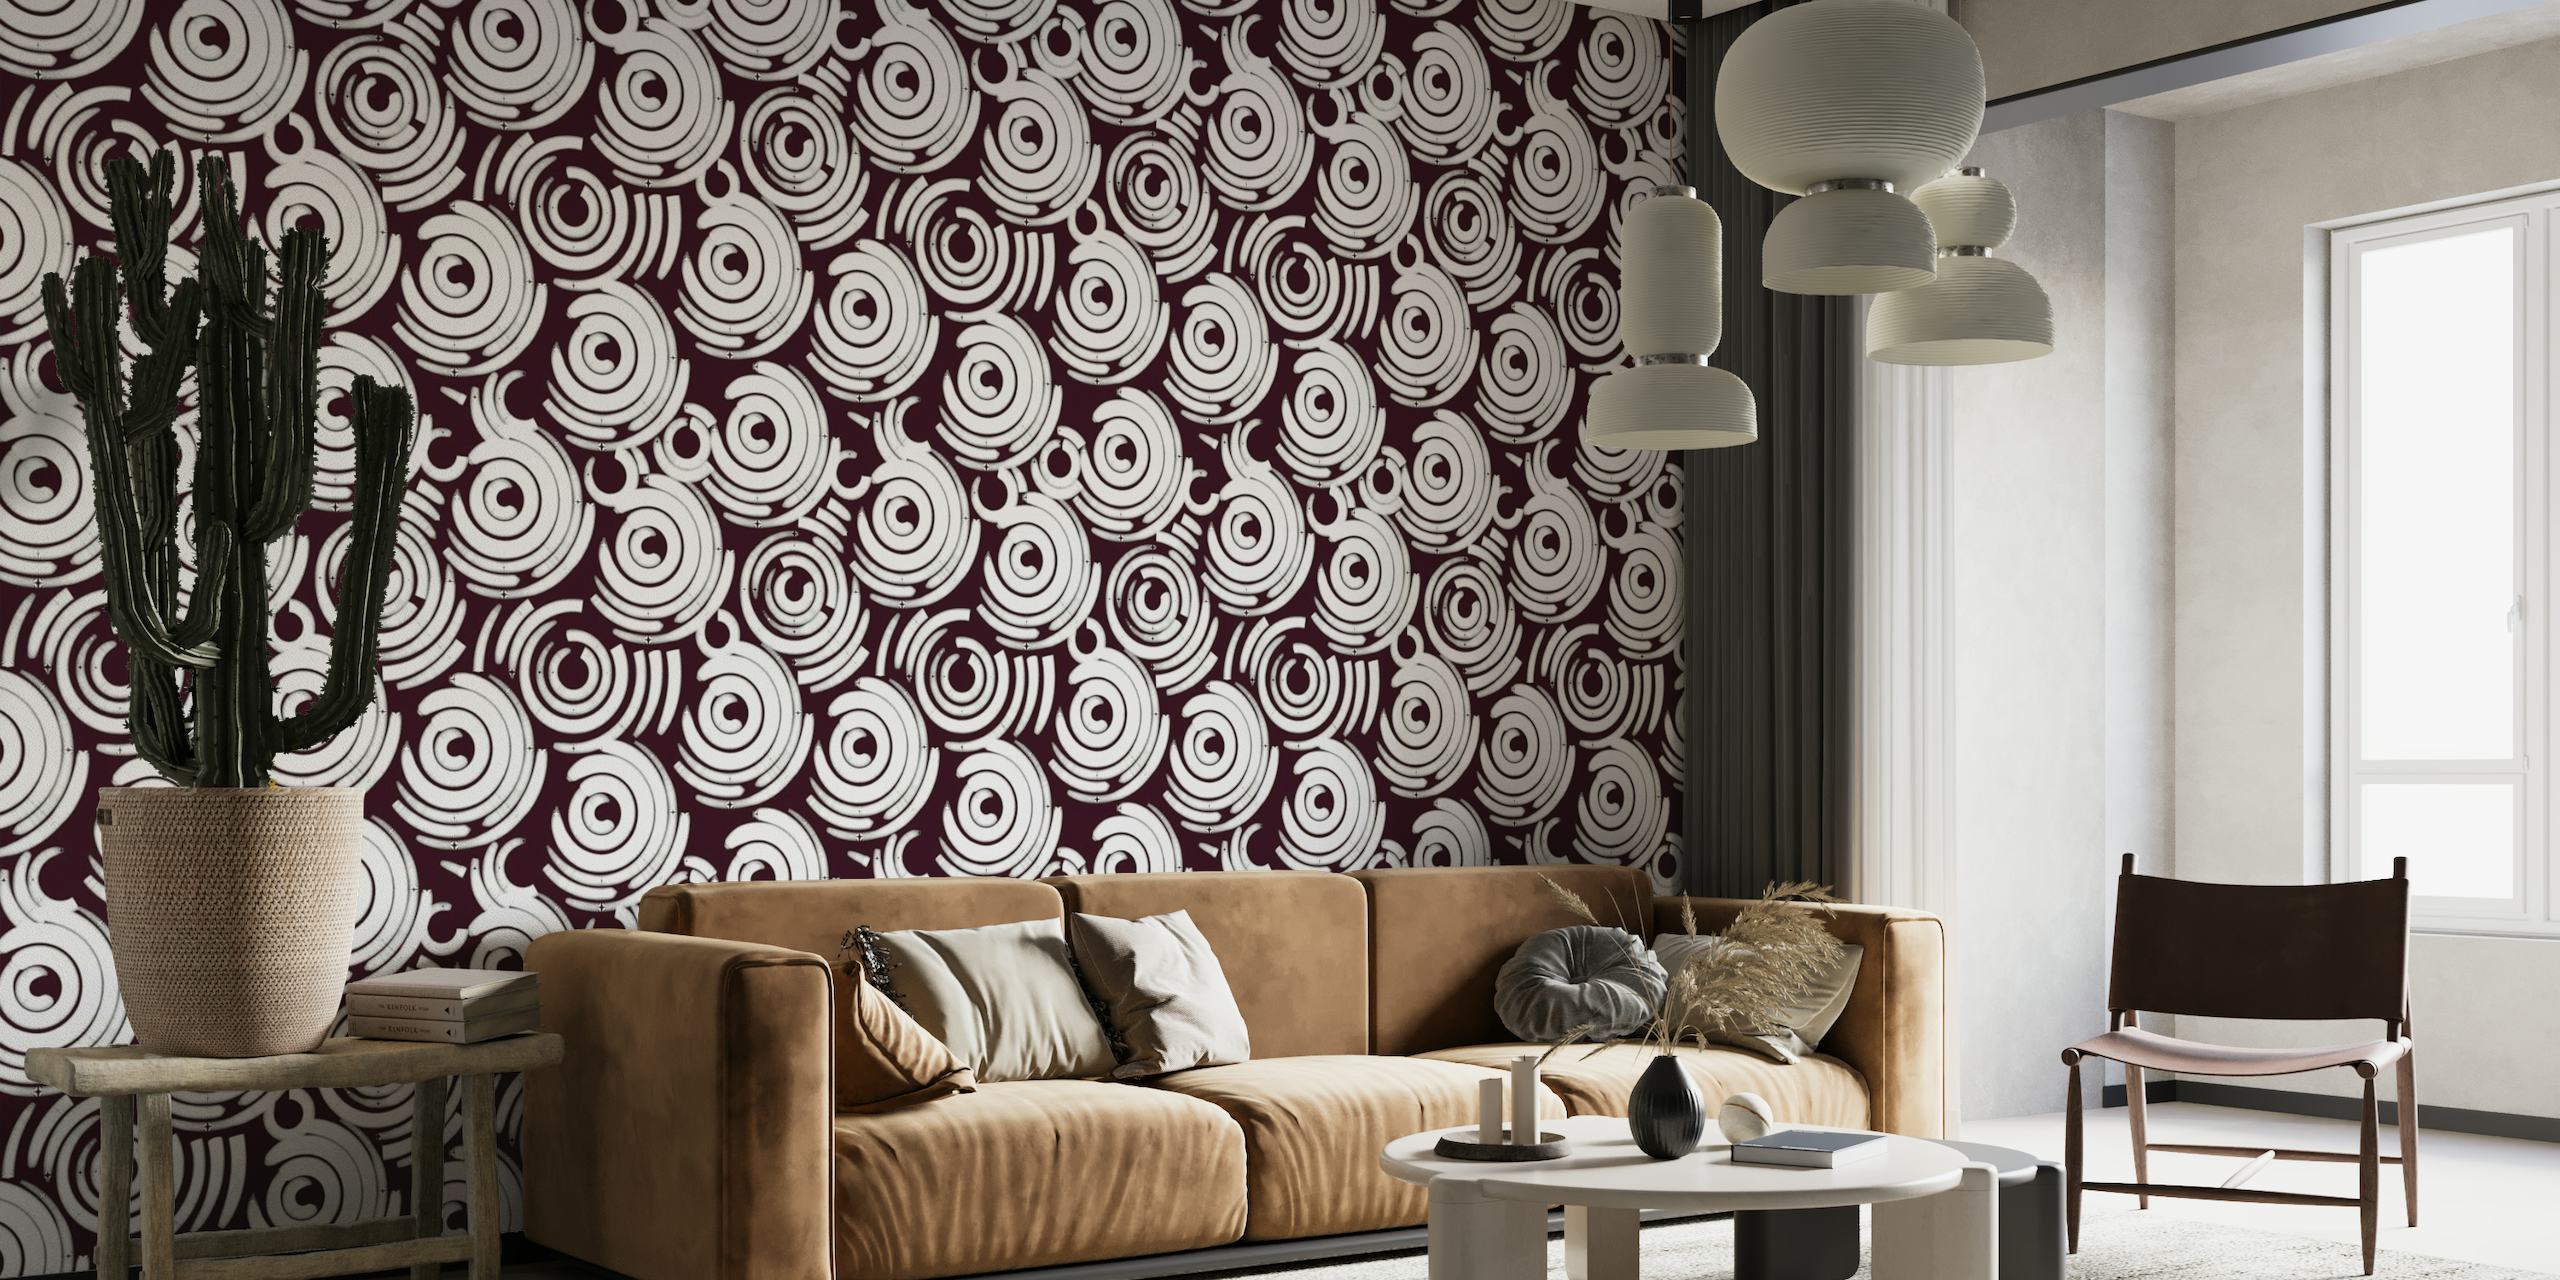 White Circles wallpaper